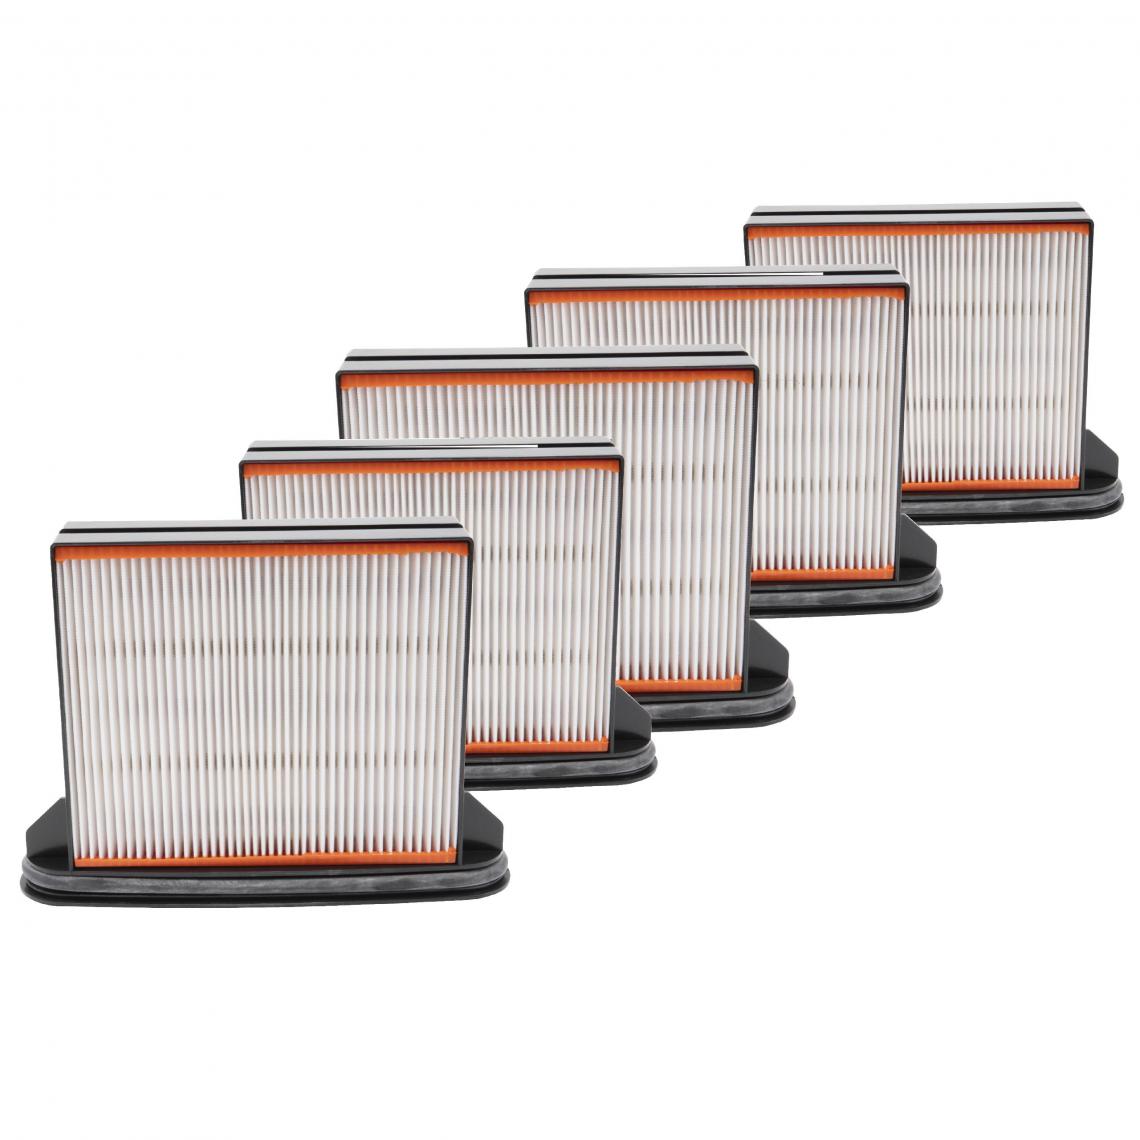 Vhbw - vhbw Lot de 5x filtres d'aspirateur compatible avec Mafell S 25, S 25 M, S 35 M, S 50, S 50 M aspirateur - Filtre HEPA contre les allergies - Accessoire entretien des sols